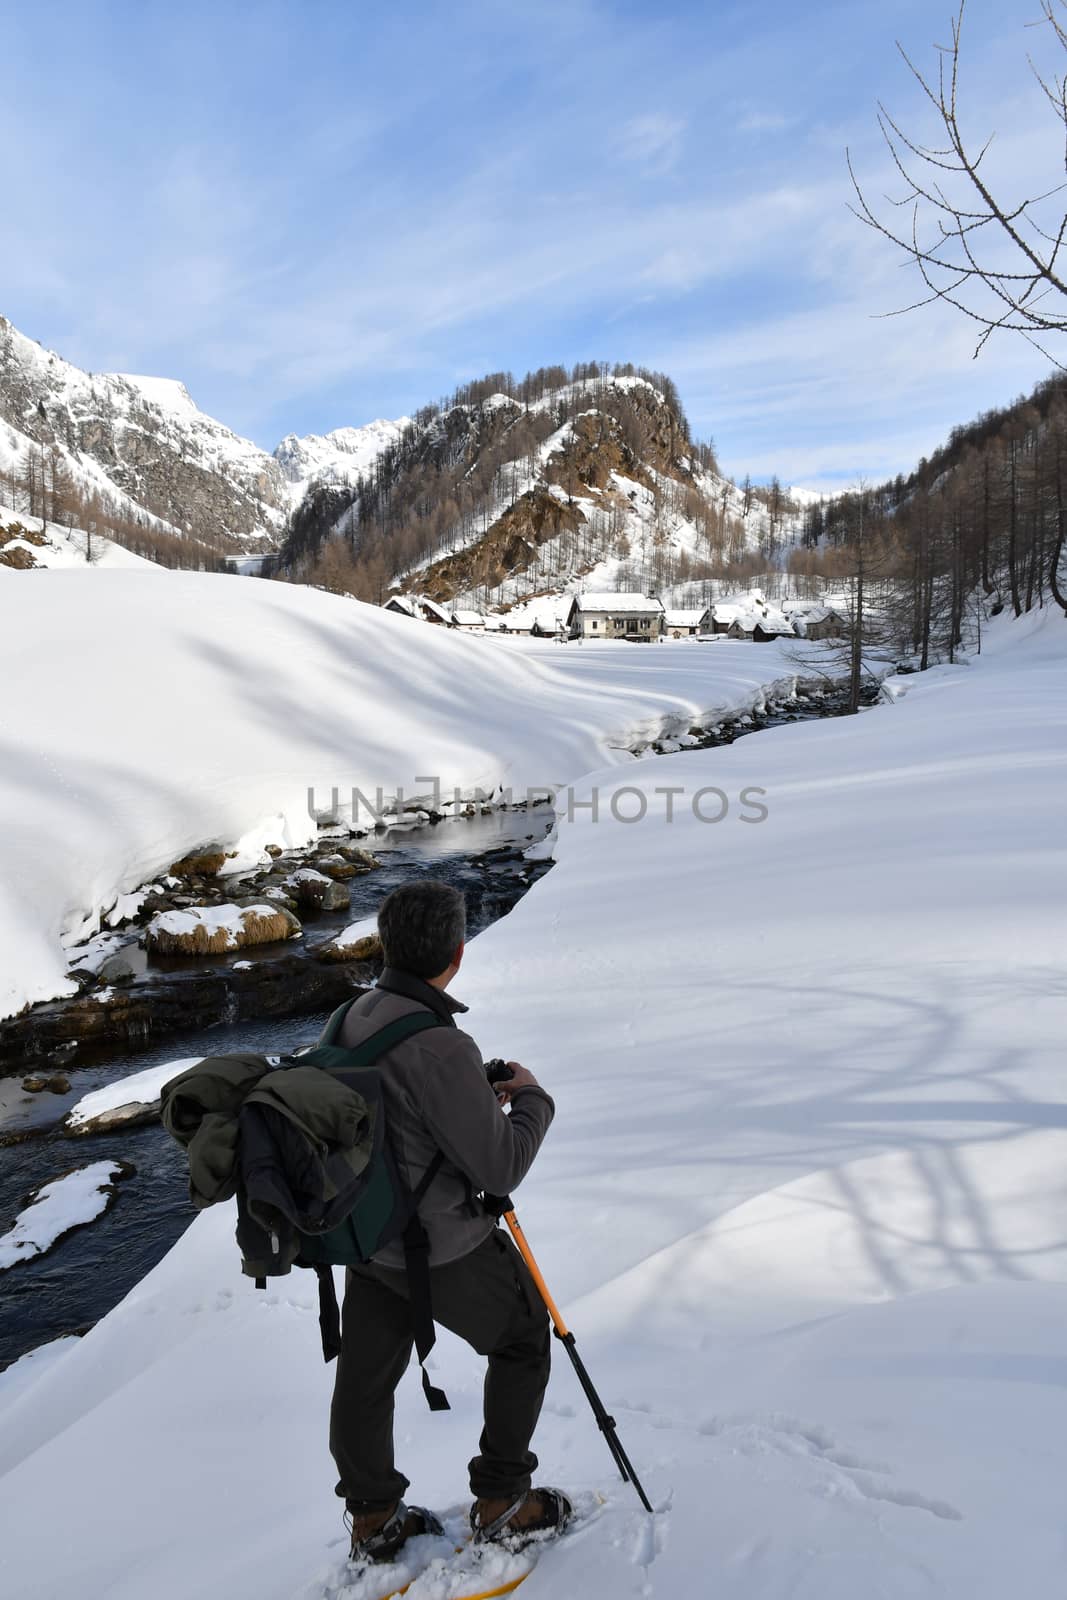 Alpe di Devero landscape in winter